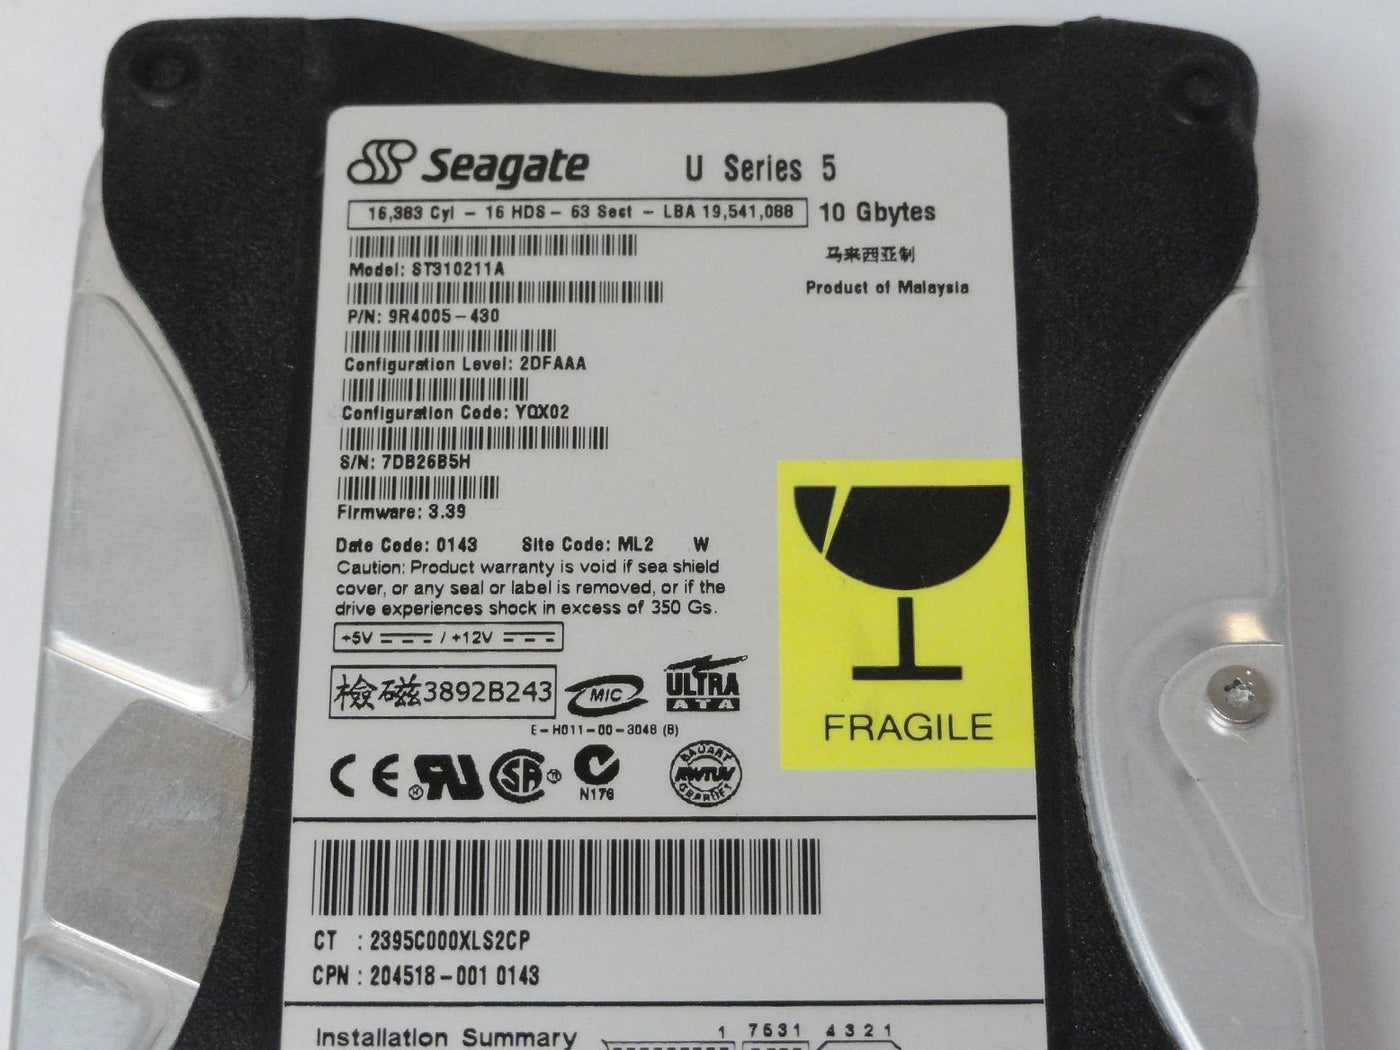 PR10971_9R4005-430_Seagate Compaq 10.2GB IDE 5400rpm 3.5in HDD - Image3